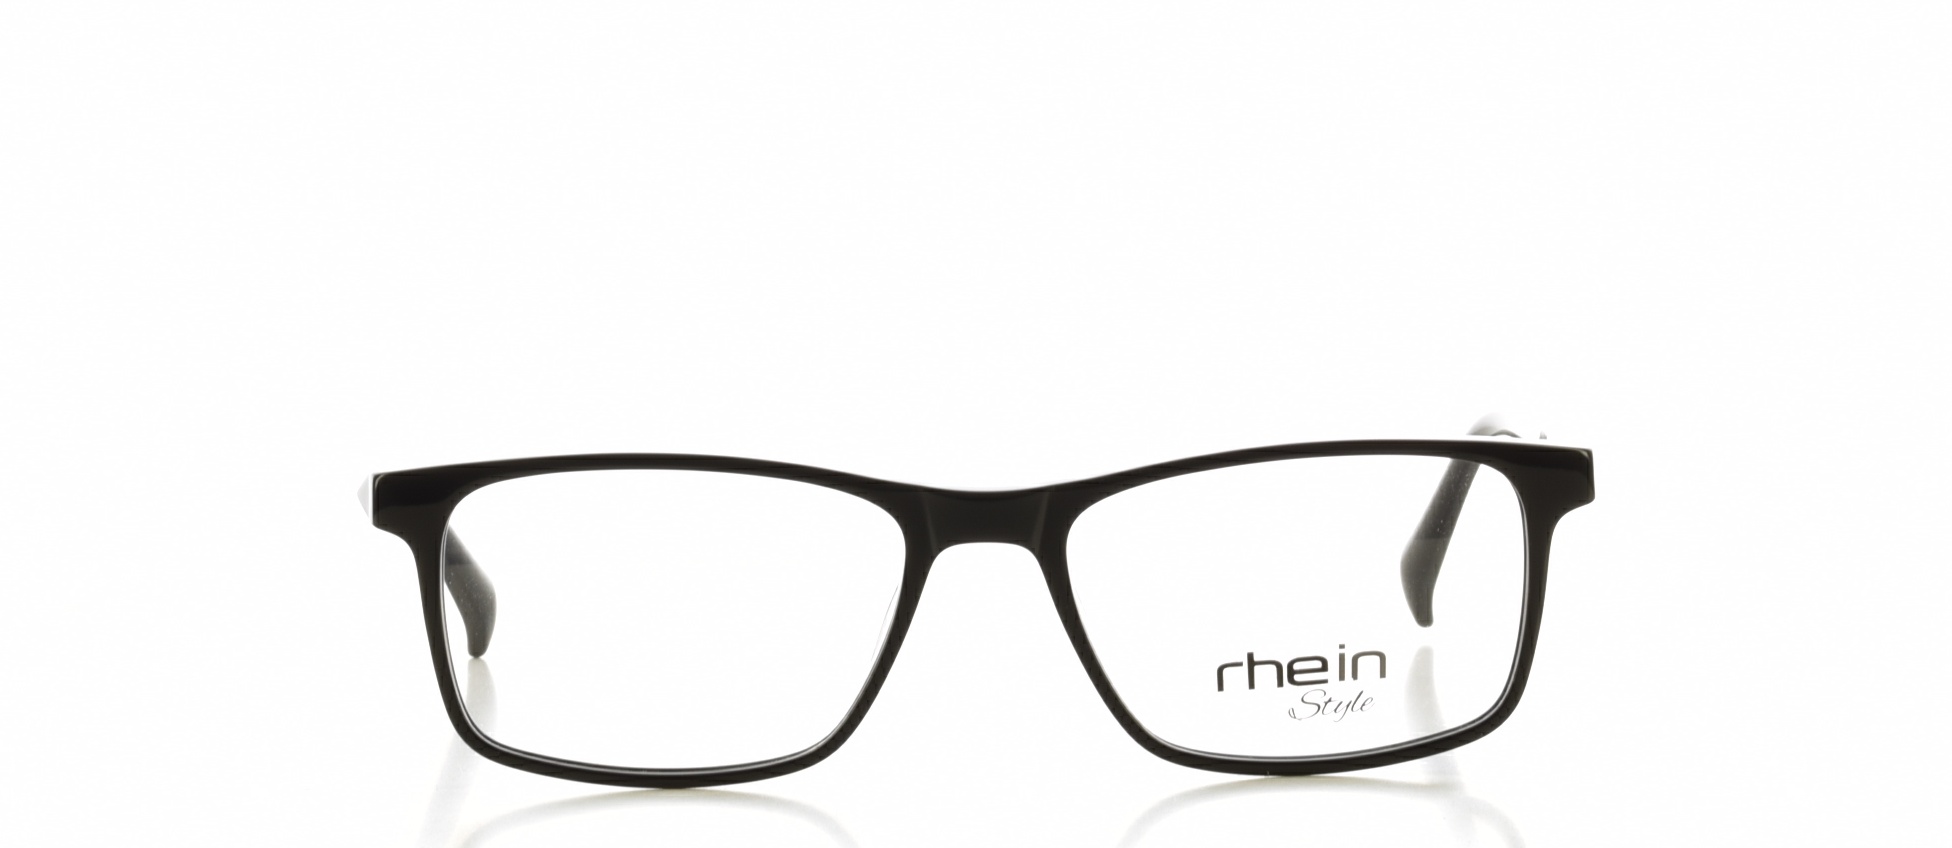 Rama ochelari vedere Rhein